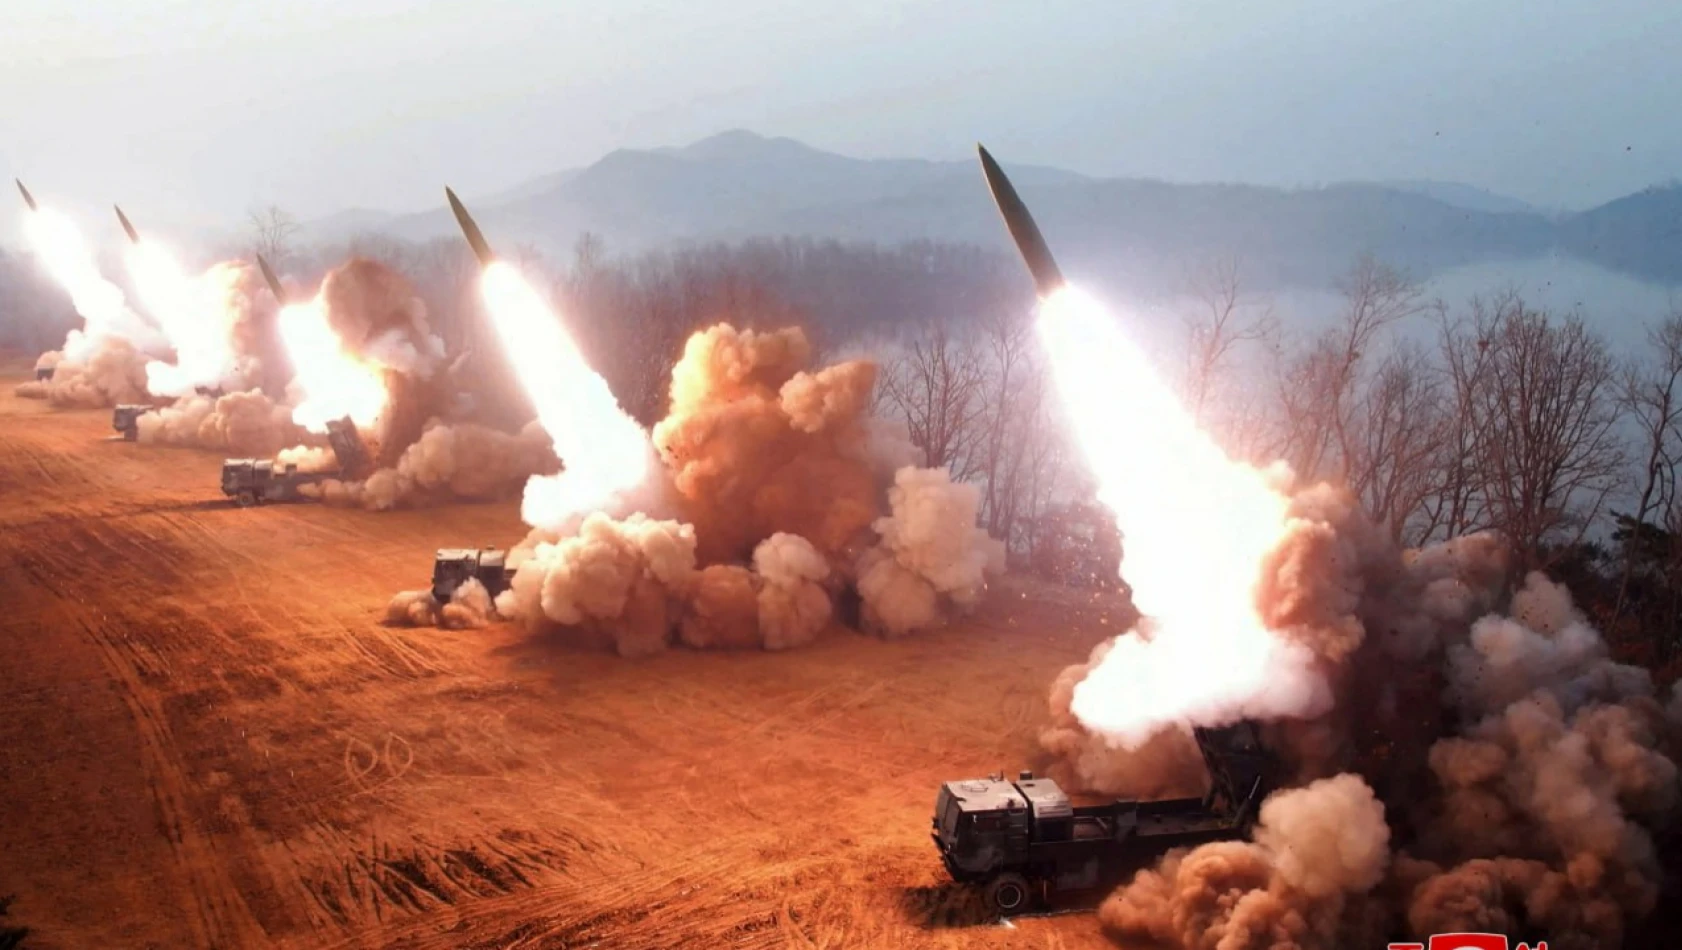 Kuzey Kore'nin hipersonik savaş başlığı taşıyan yeni balistik füzesi başarıyla denendi